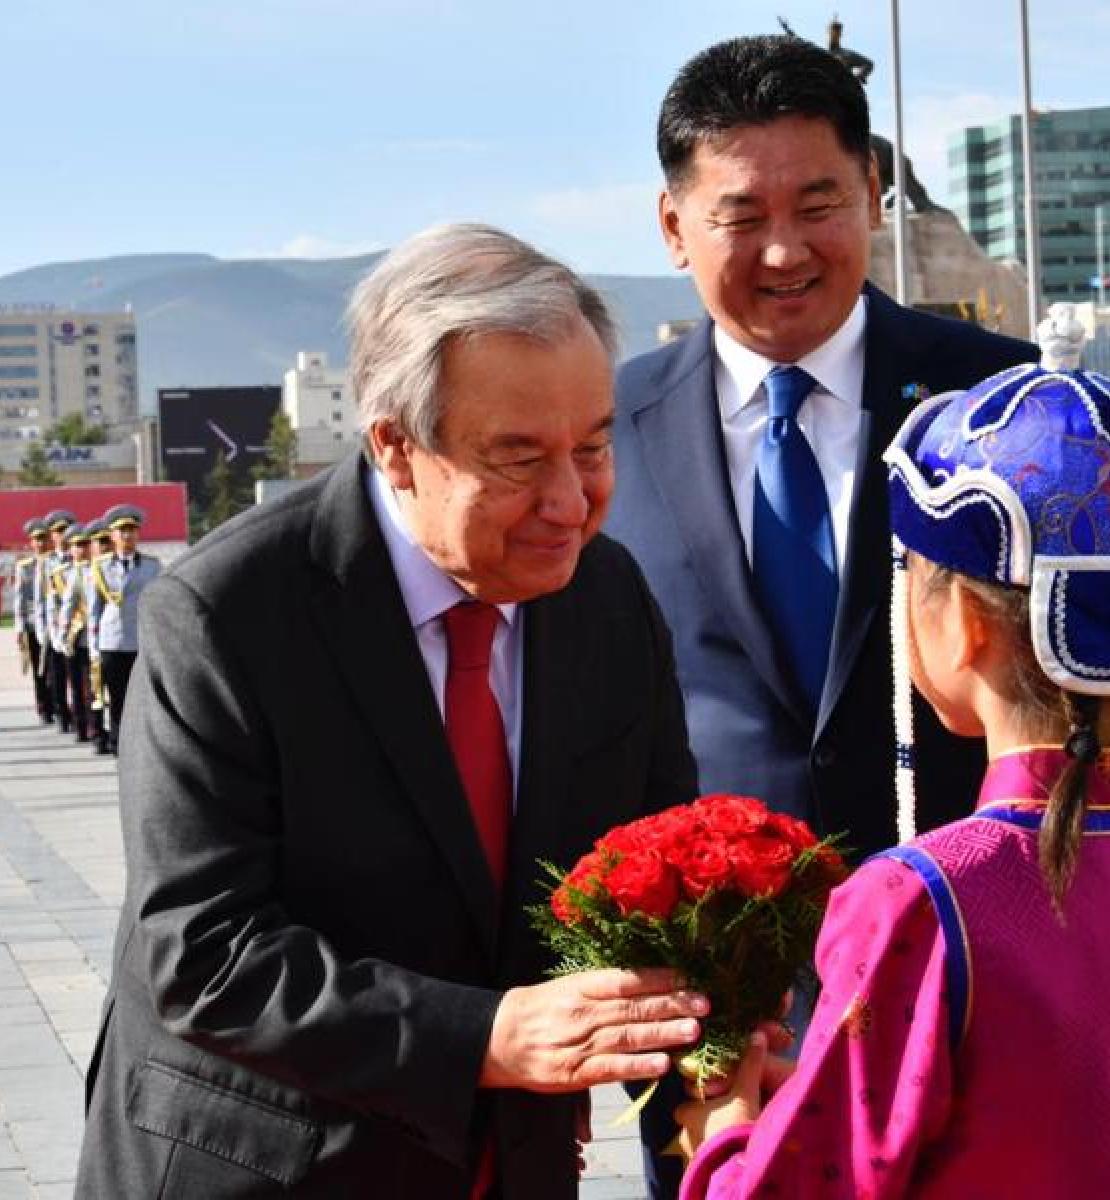 يتلقي الأمين العام للأمم المتحدة الزهور من فتاة منغولية.